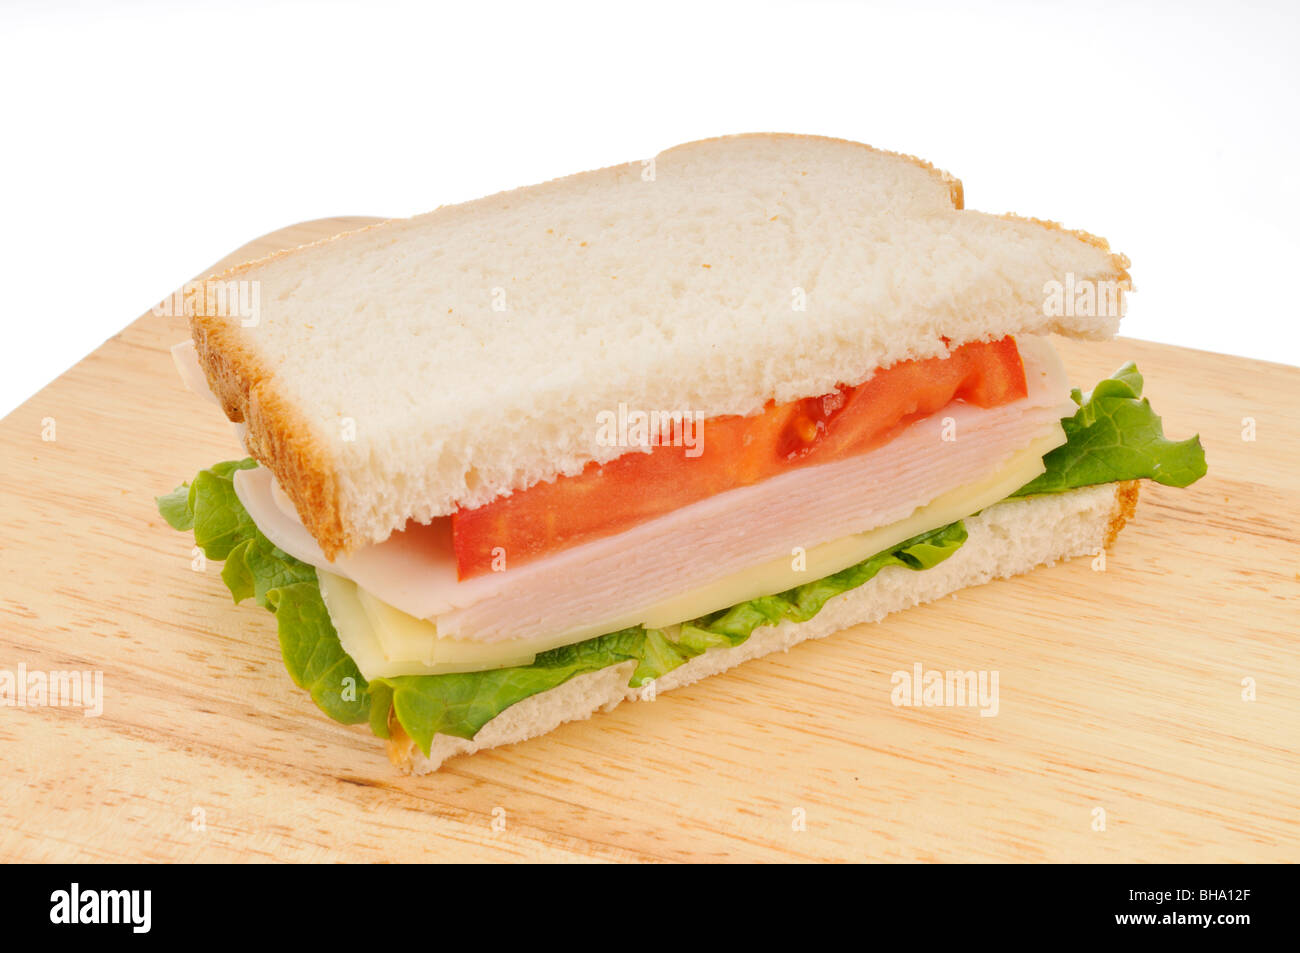 La metà di una Turchia e formaggio in sandwich di pane bianco con lattuga e pomodoro su un tagliere su sfondo bianco. Foto Stock